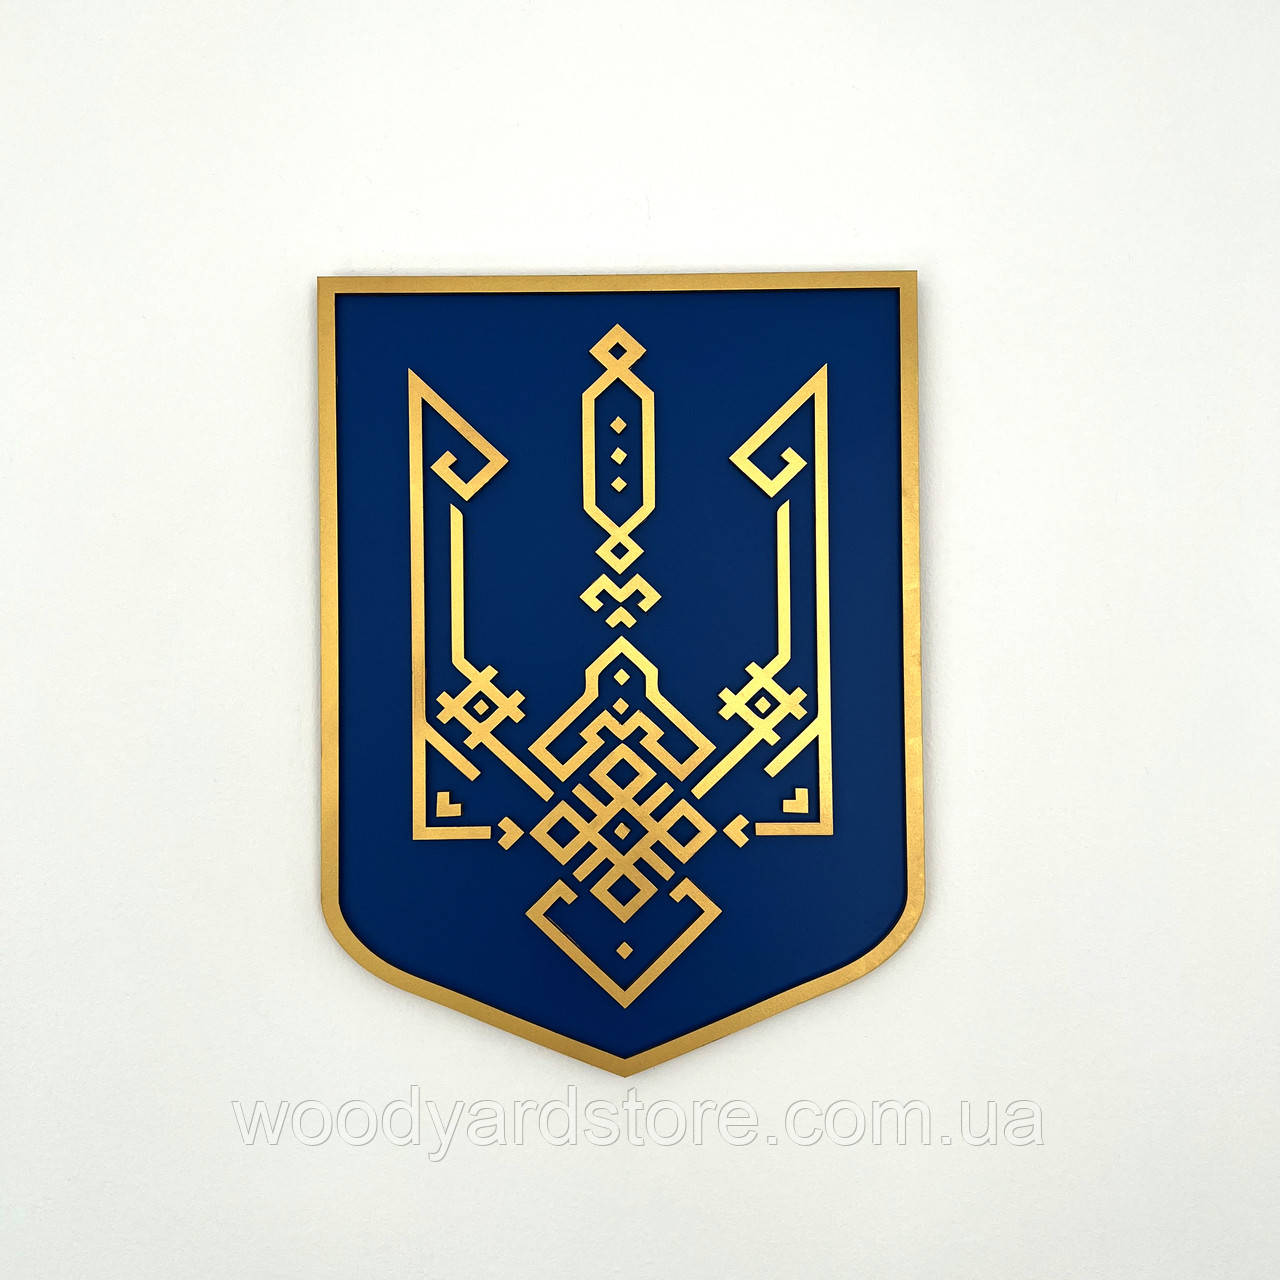 Державний Герб України, тризуб вишиванка, дерев'яний декор стін 25x18 см, золотий герб на синьому щиті